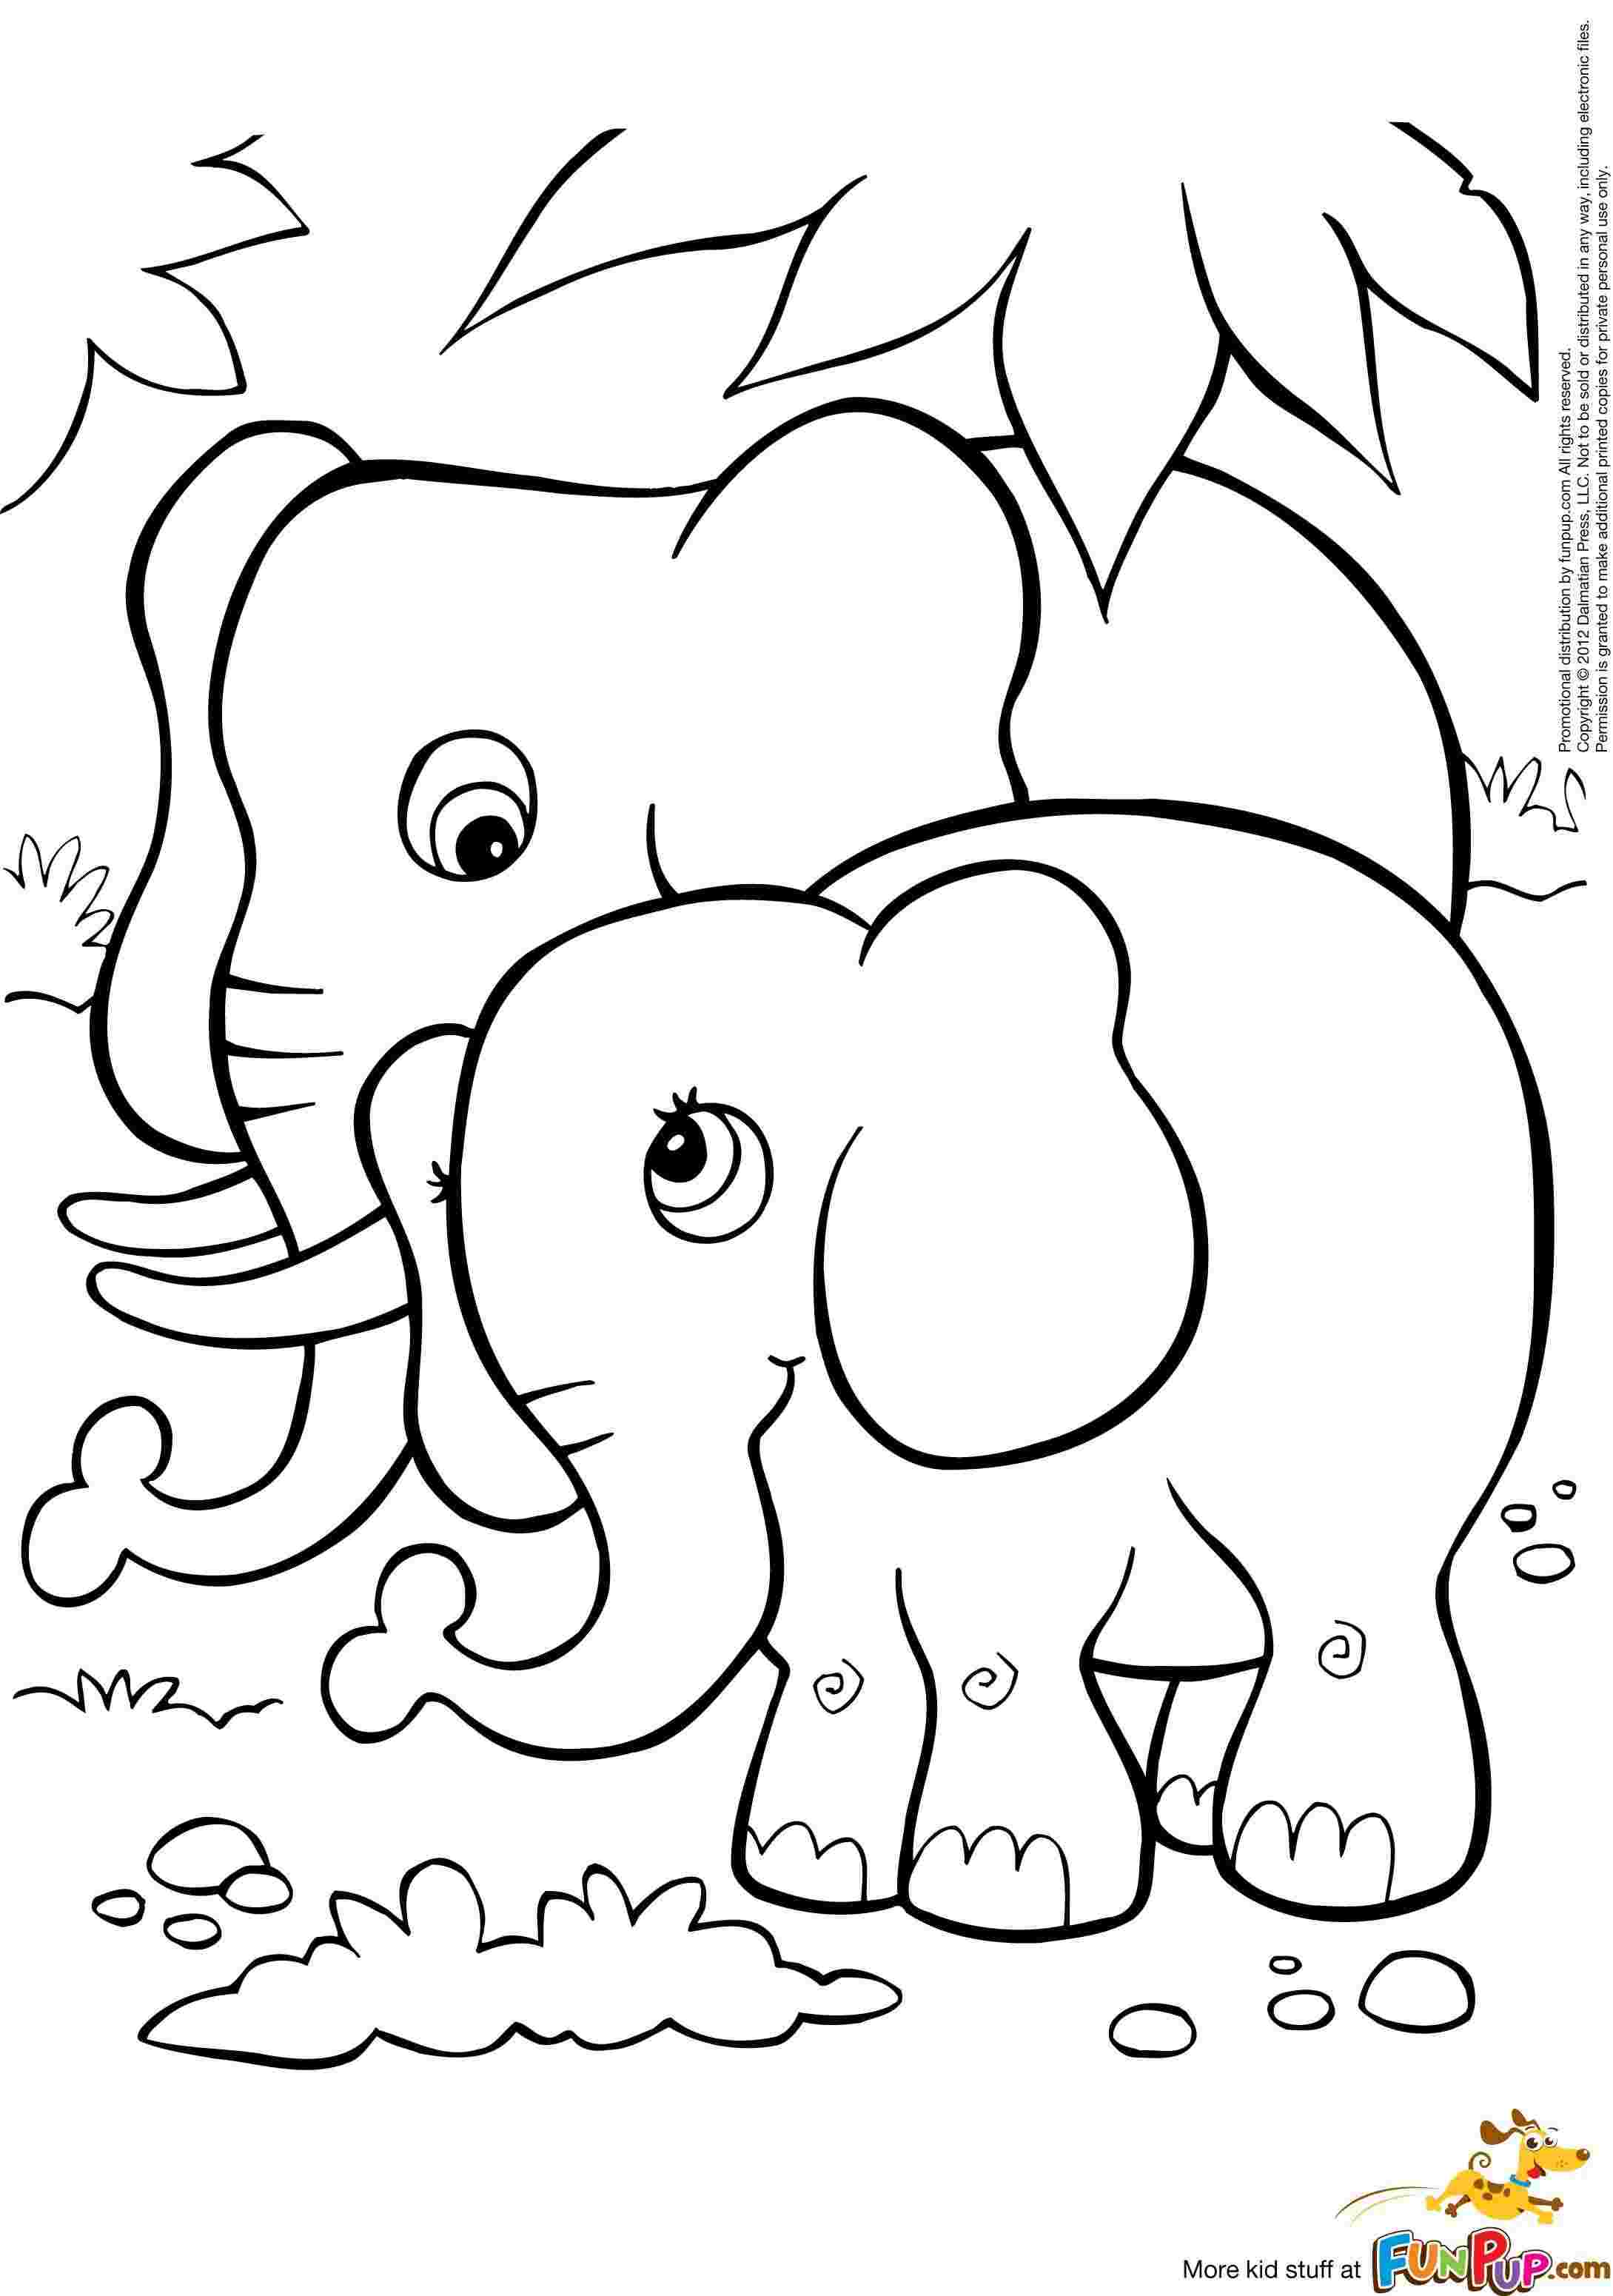 Tranh tô màu voi lớn voi bé đứng cạnh nhau